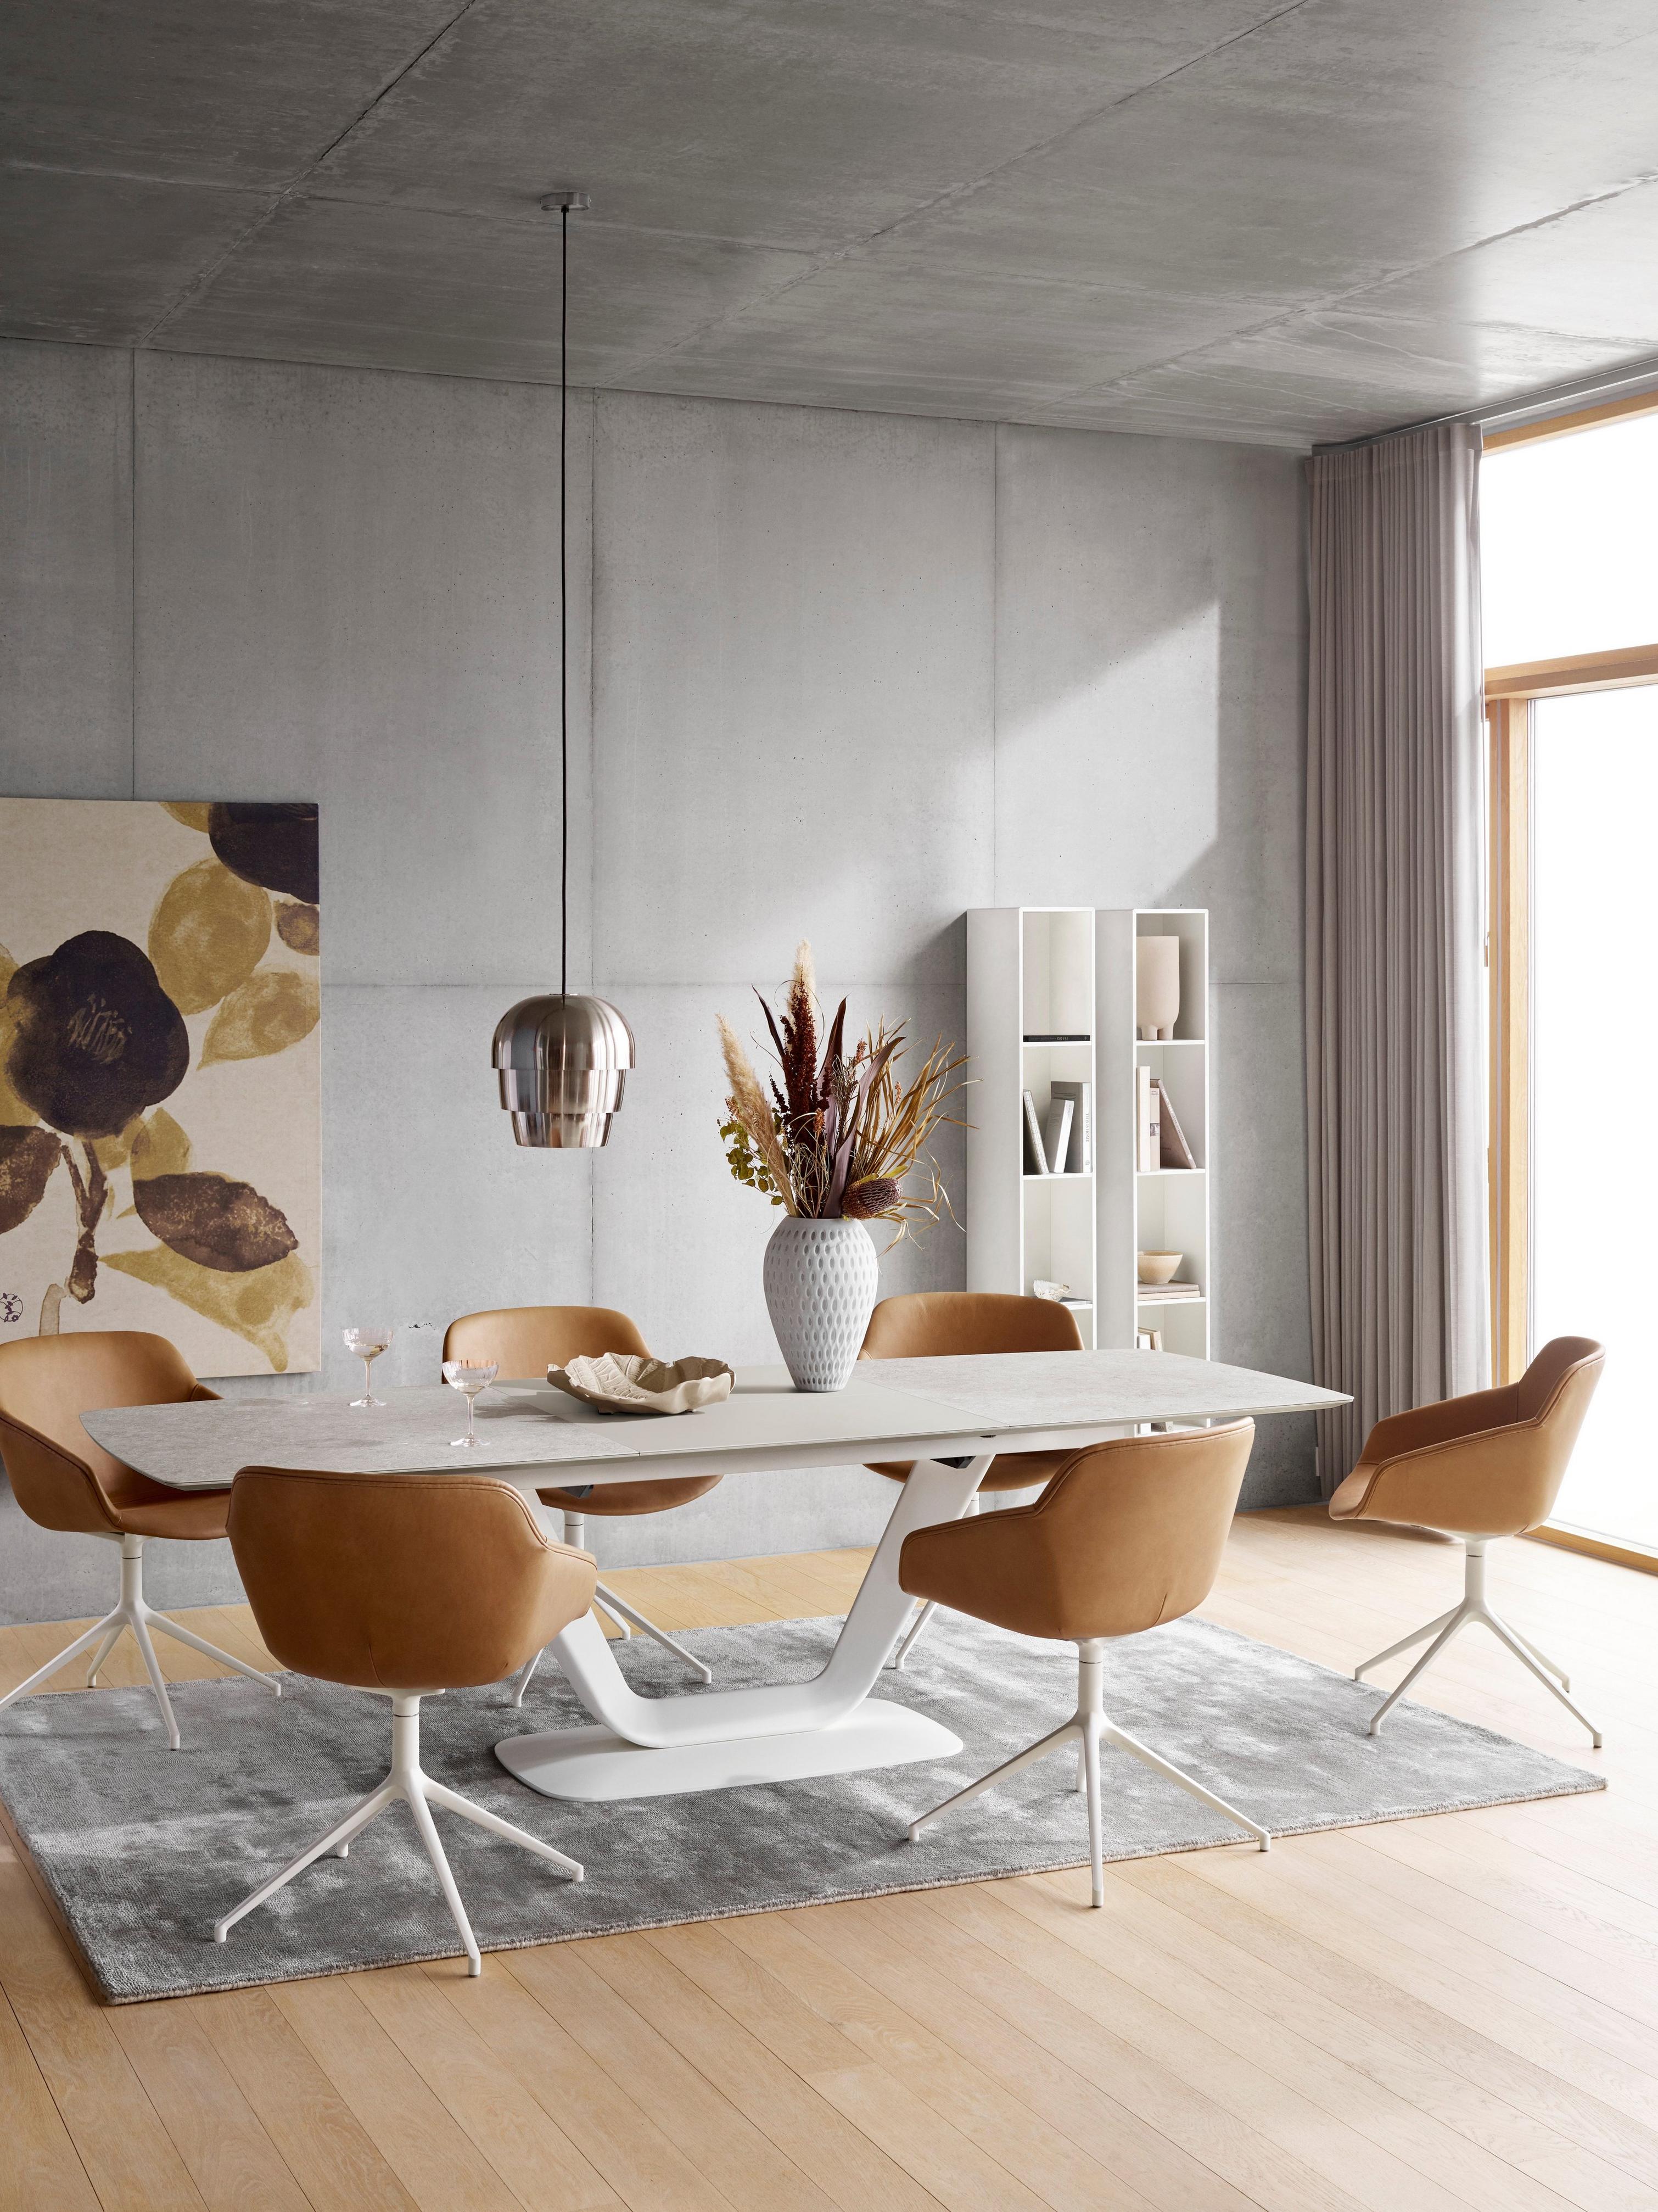 Comedor con sillas cafés, mesa blanca, lámpara de techo y alfombra gris, con arte y estantería.